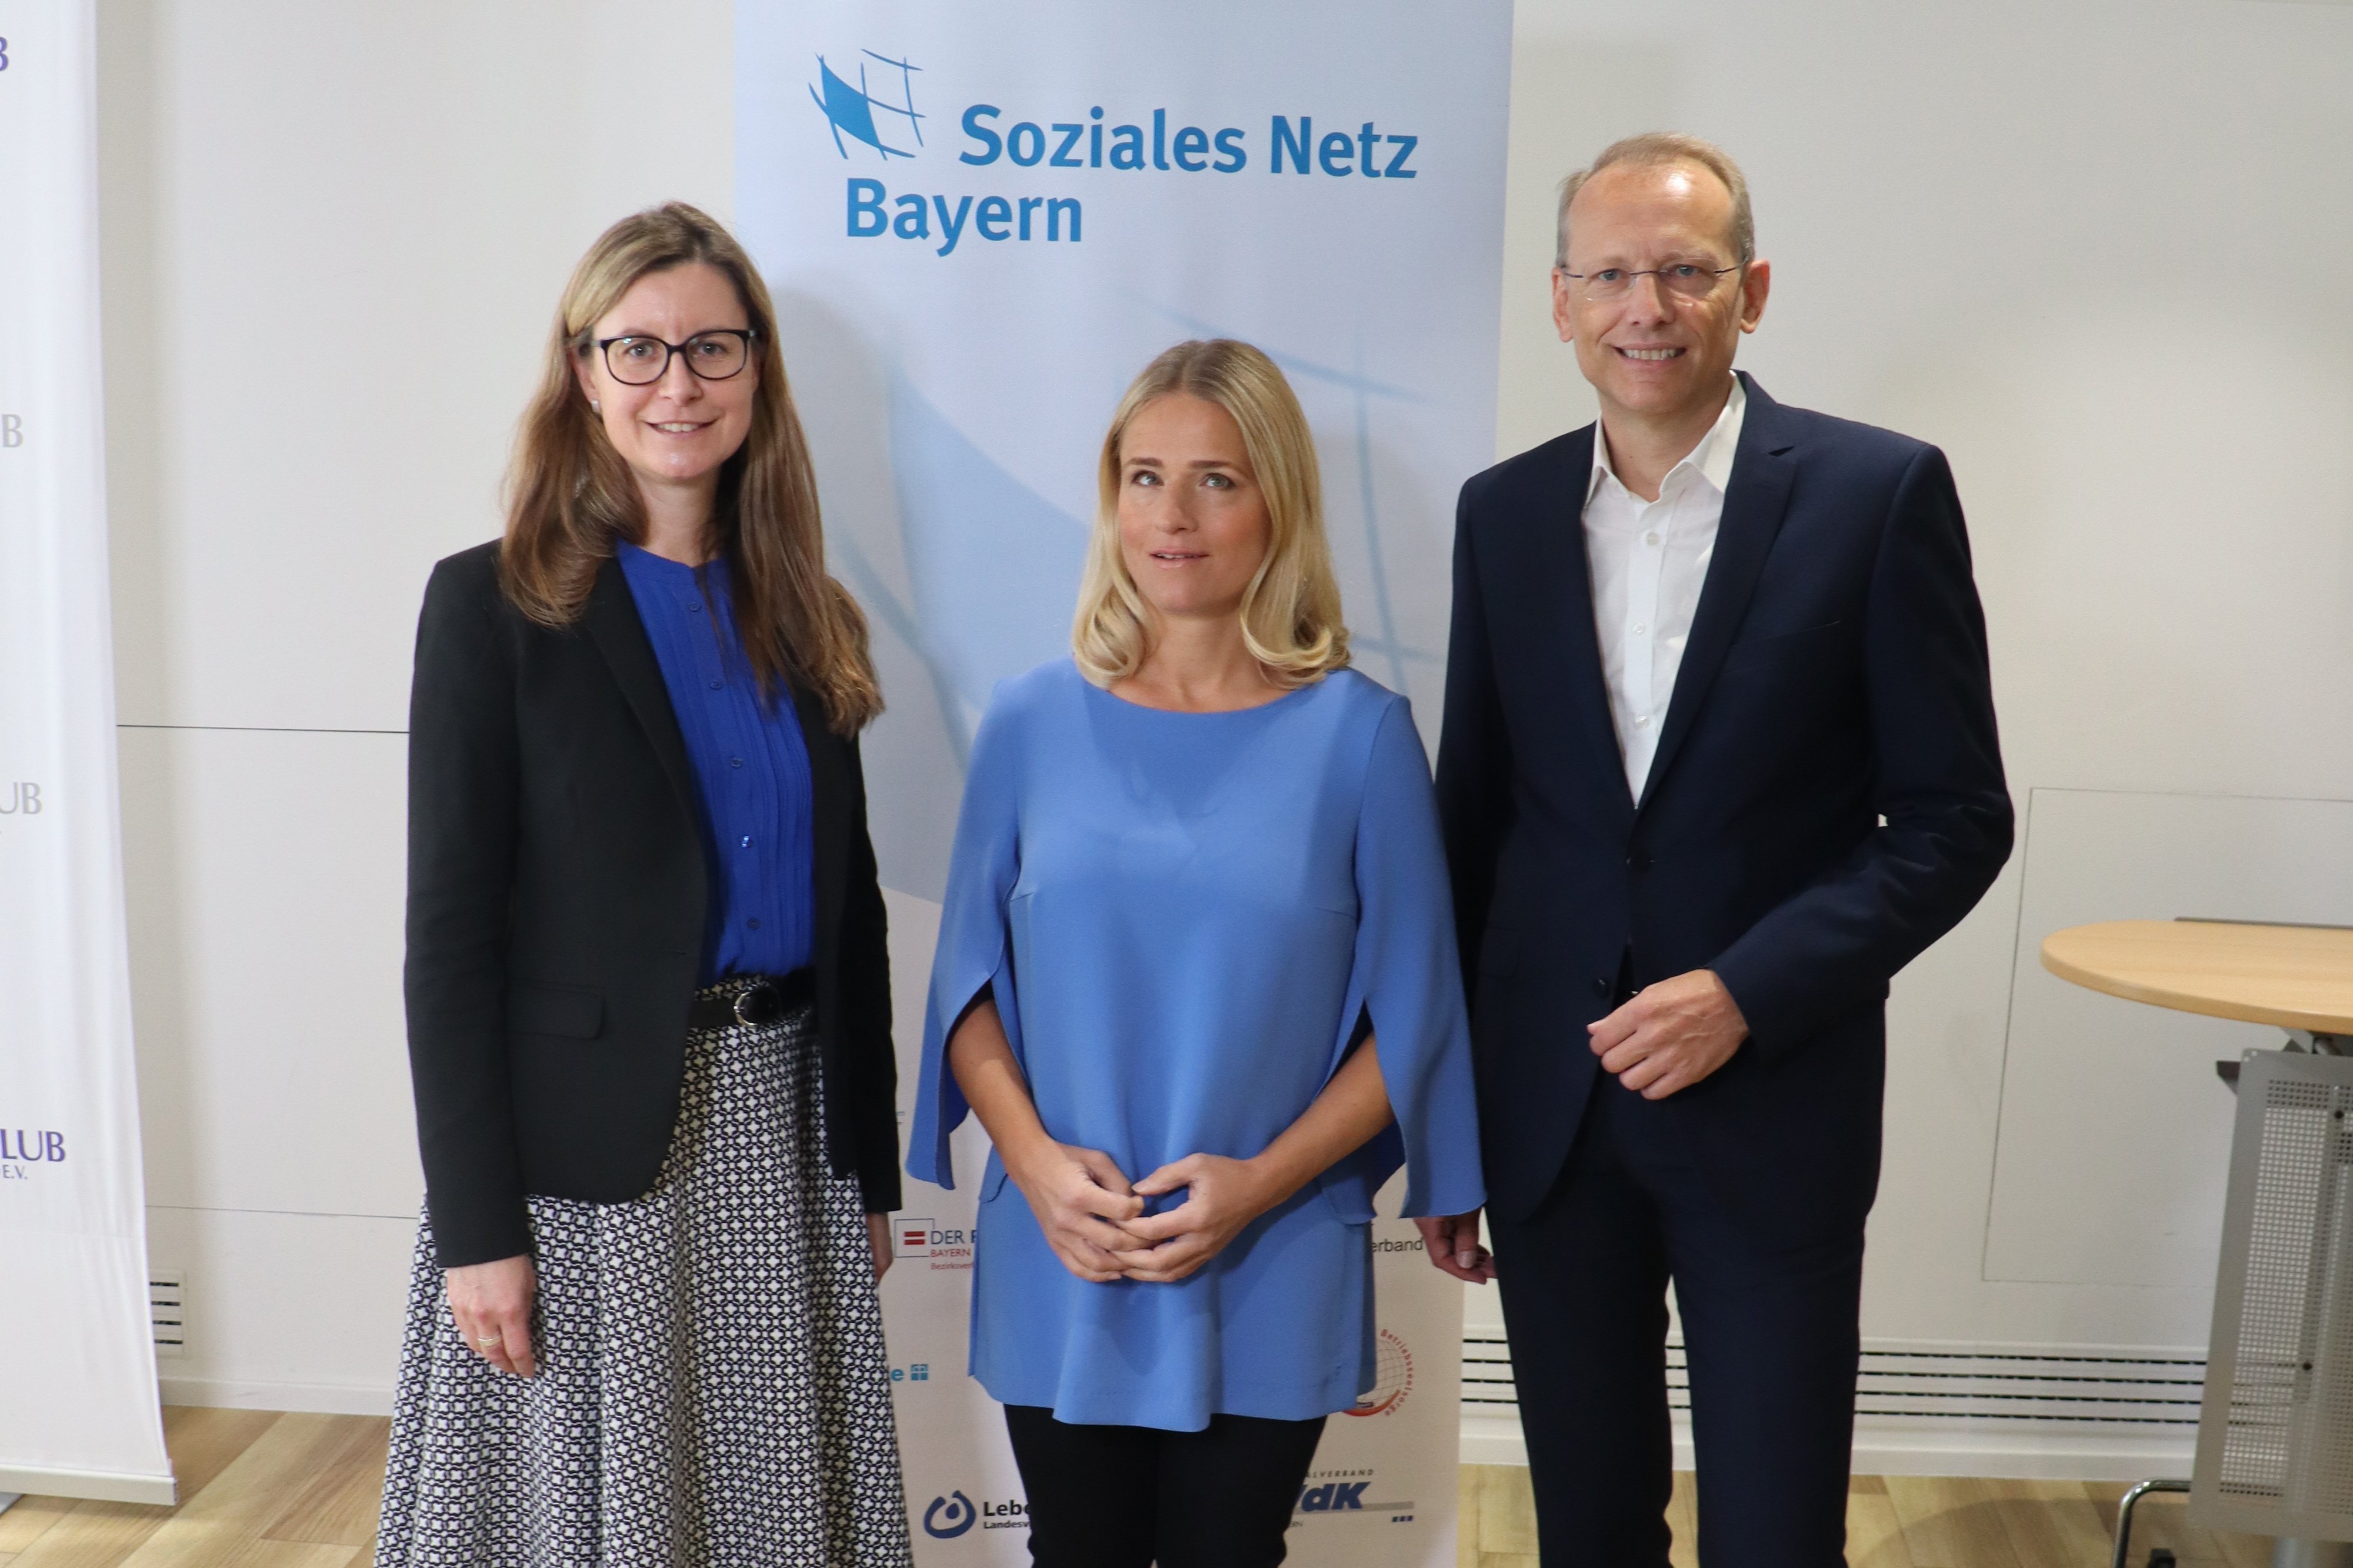 Auf dem Bild sind Dr. Sabine Weingärtner, Präsidentin der Diakonie Bayern, VdK-Landesvorsitzende Verena Bentele und Bernhard Stiedl, Vorsitzender DGB Bayern, zu sehen.